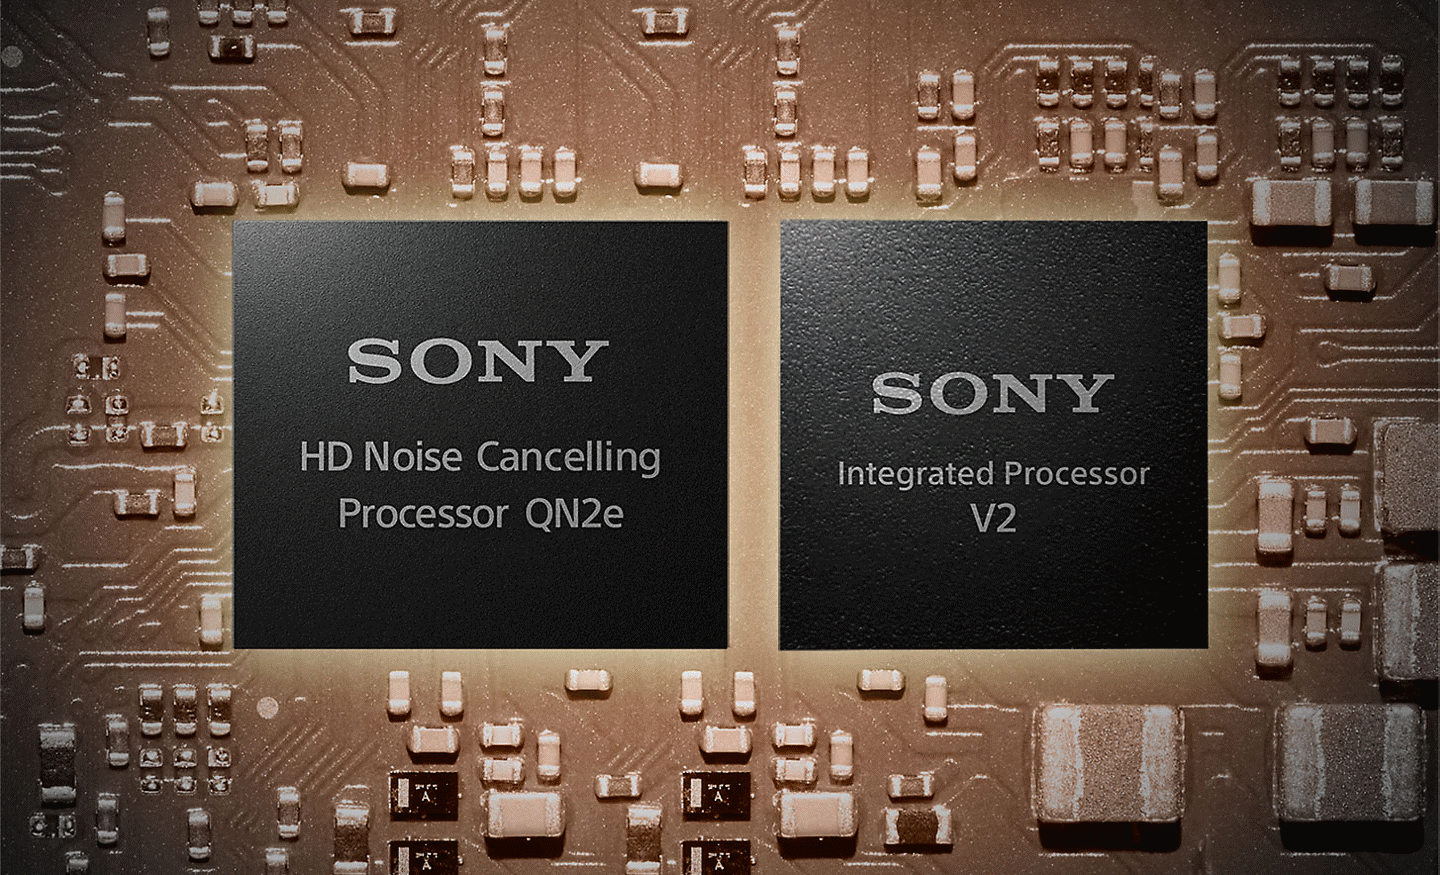 Bild von zwei Prozessoren auf einem Motherboard, links ein HD-Prozessor für Noise Cancelling und rechts der integrierte V2-Prozessor